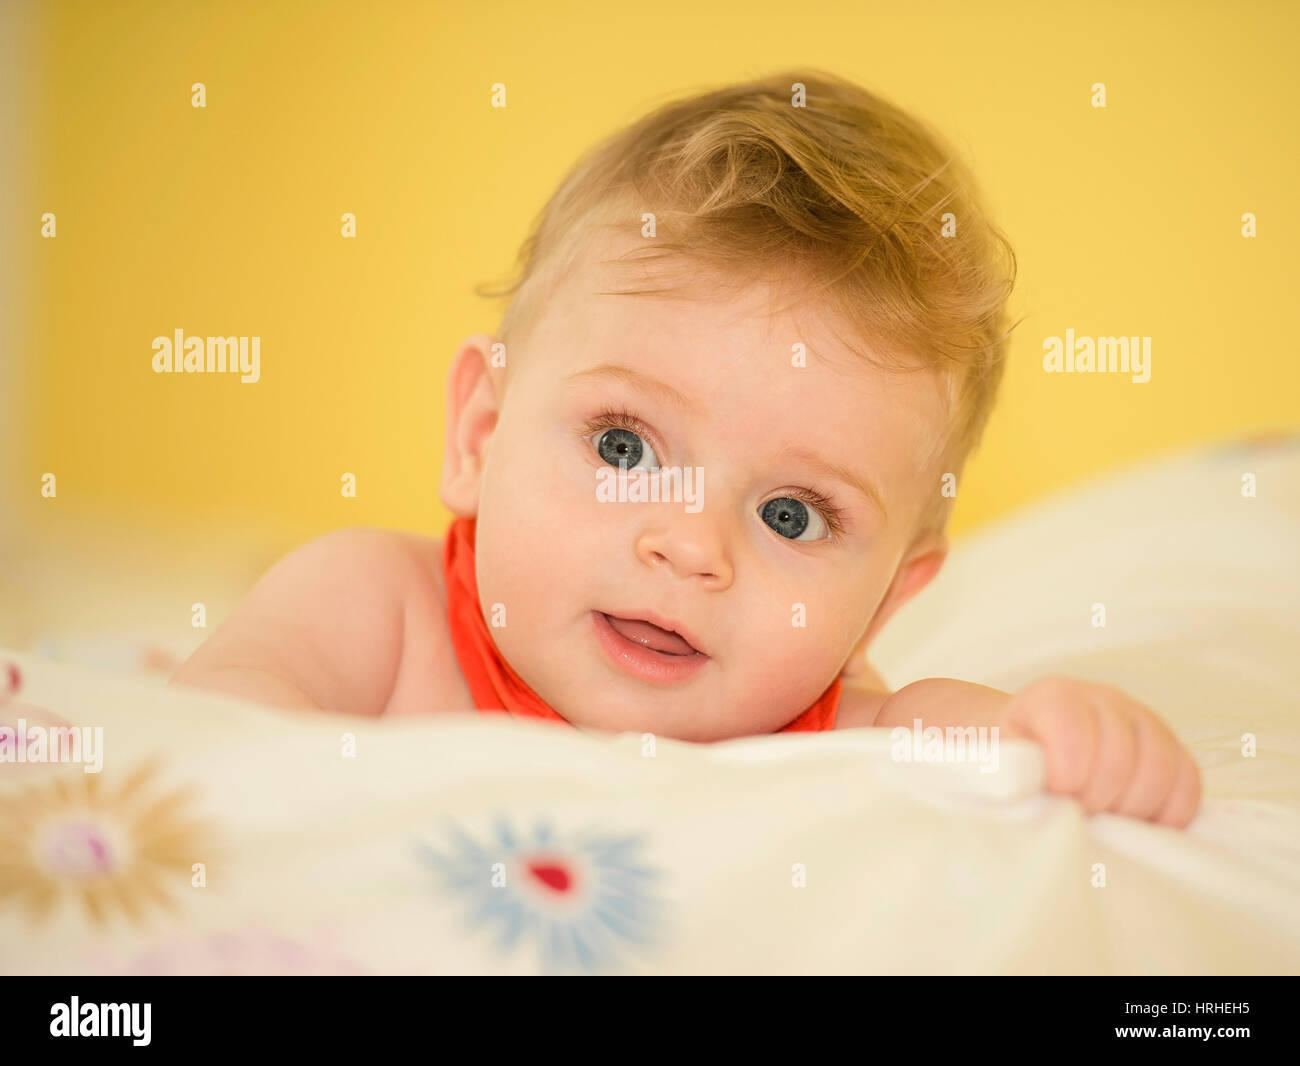 Bub, 6 Monate alt - Little Boy, 6 mes Foto de stock